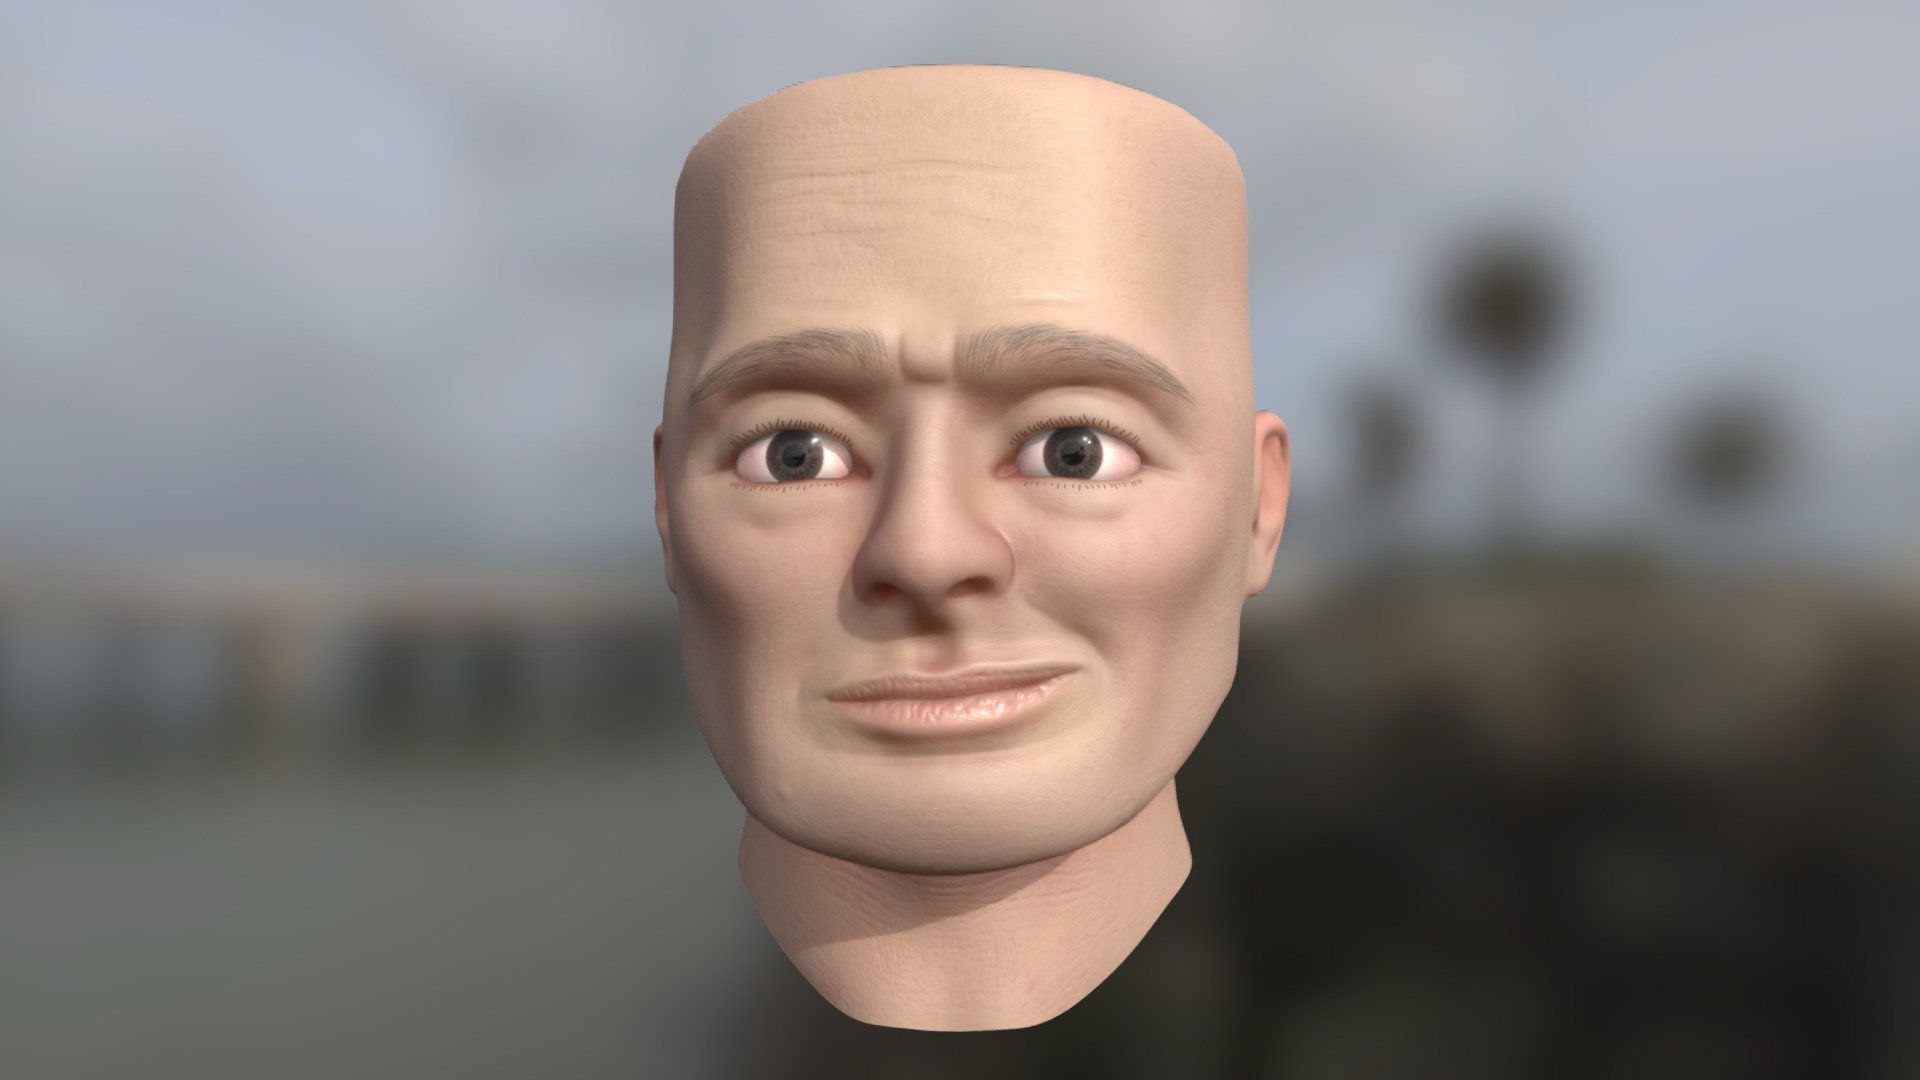 Man Face Roblox, Roblox Man Face